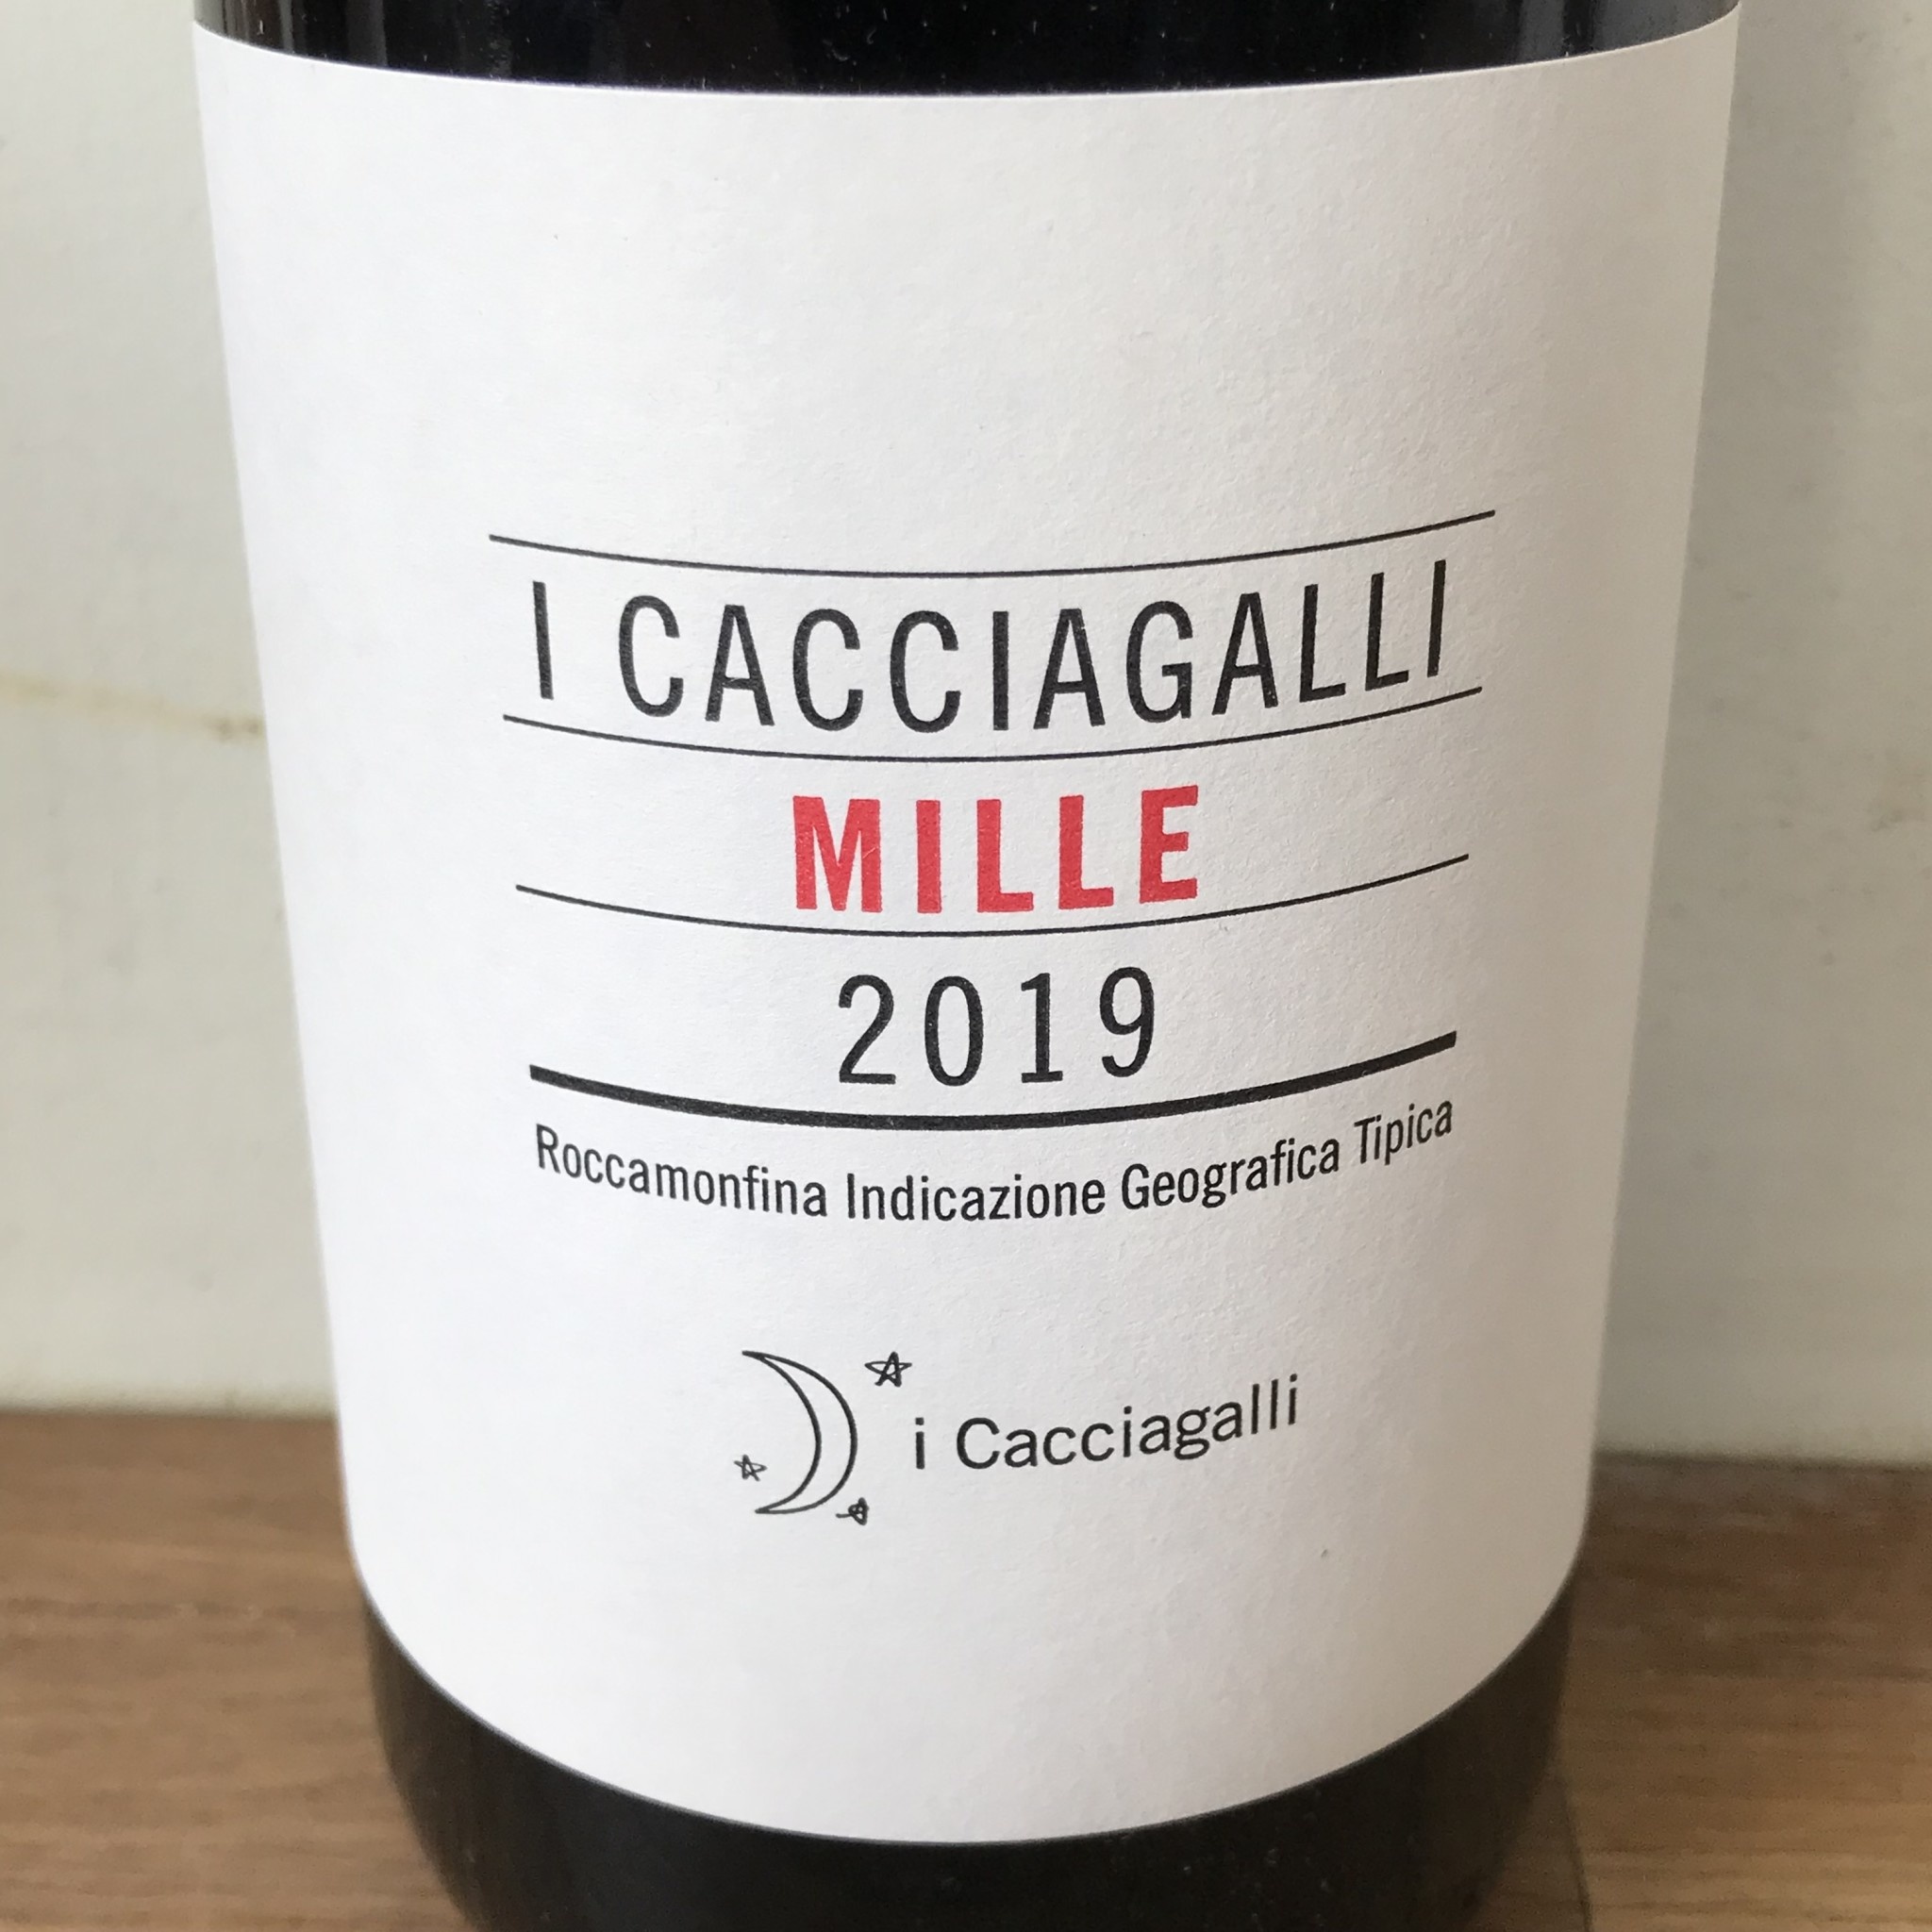 Italy 2019 I Cacciagalli "Mille" Roccamonfina Rosso